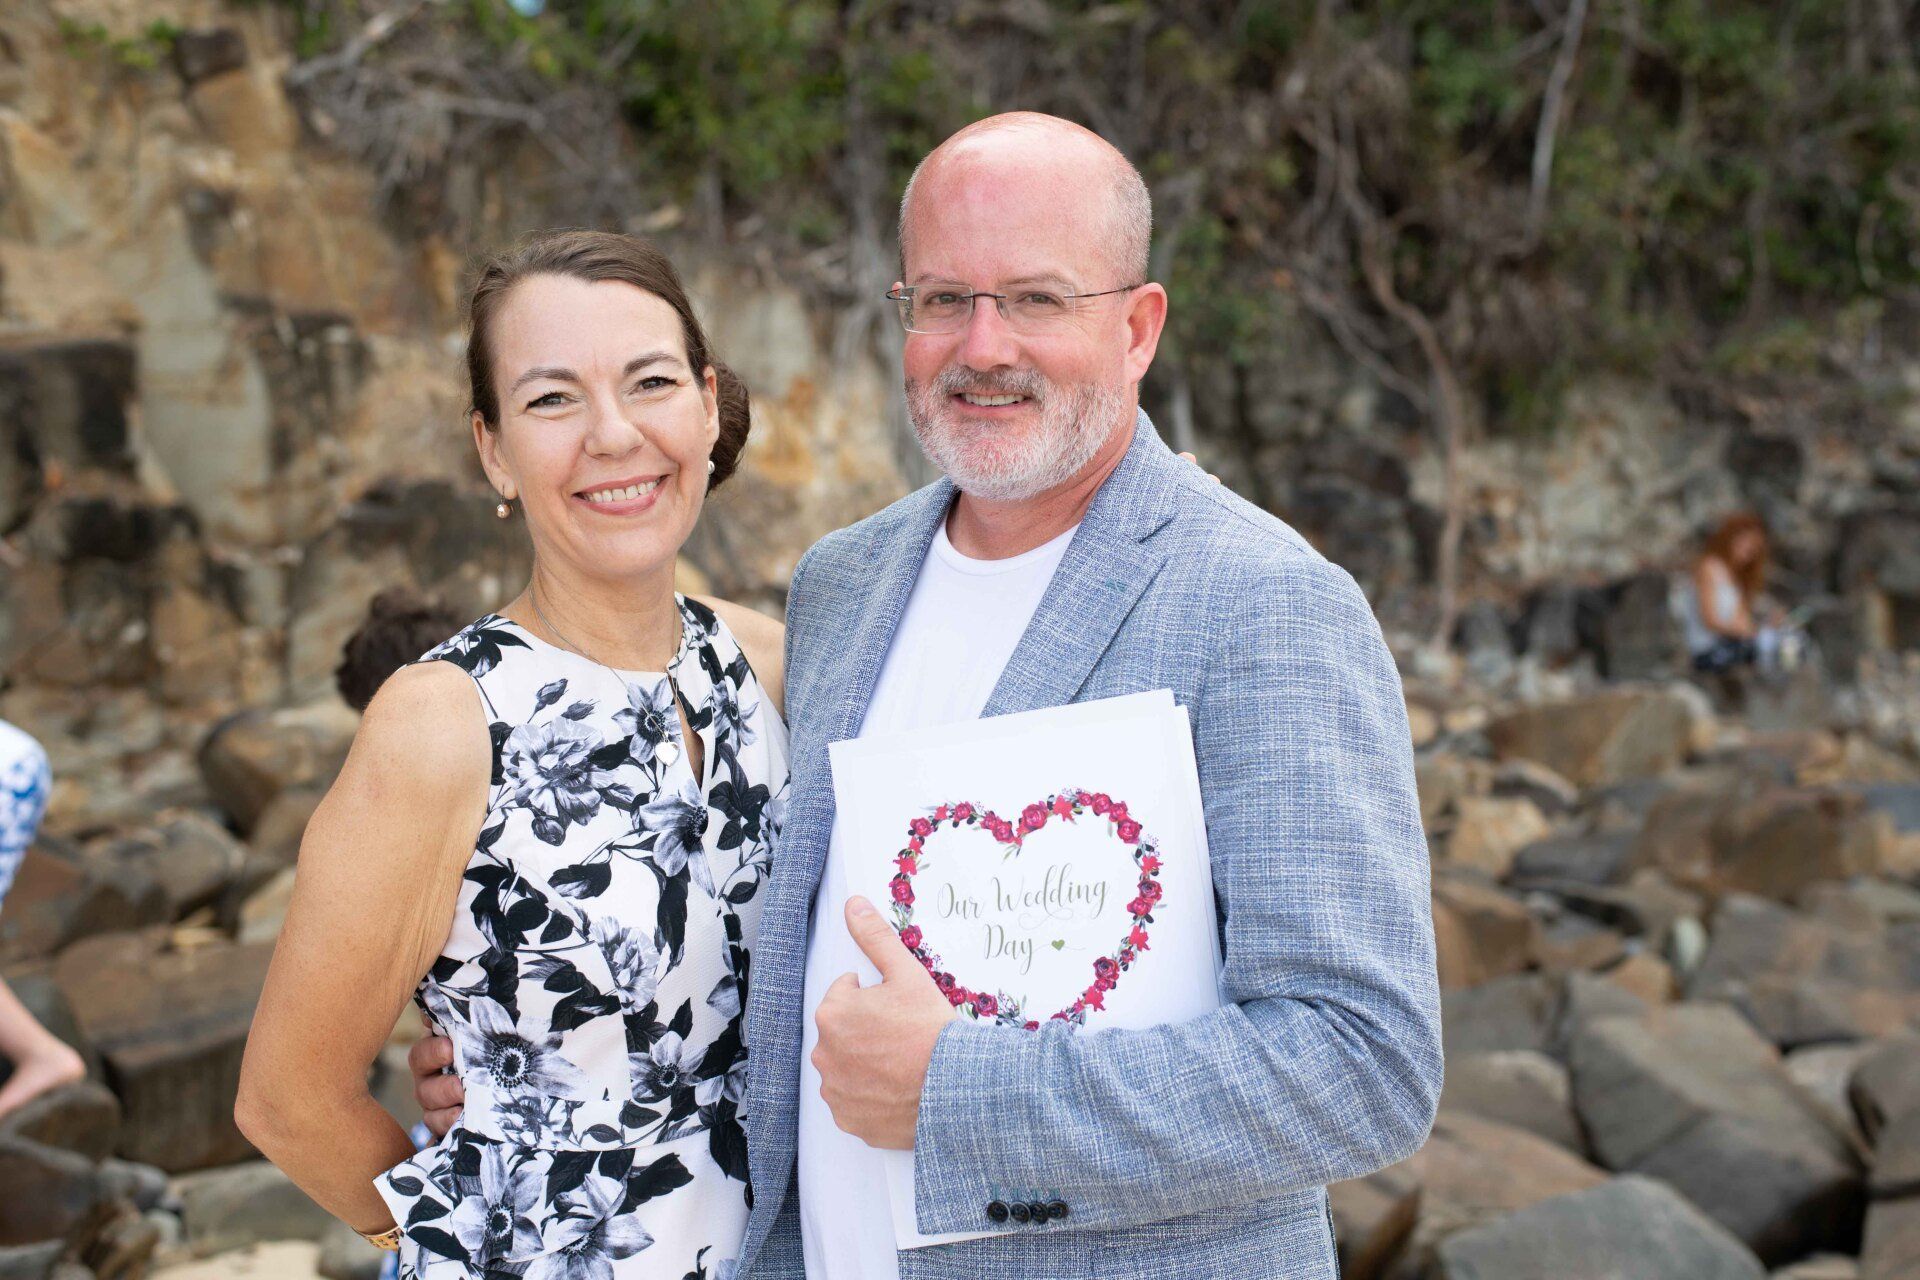 Celebrant photography packages Sunshine Coast Noosa Wedding Celebrant